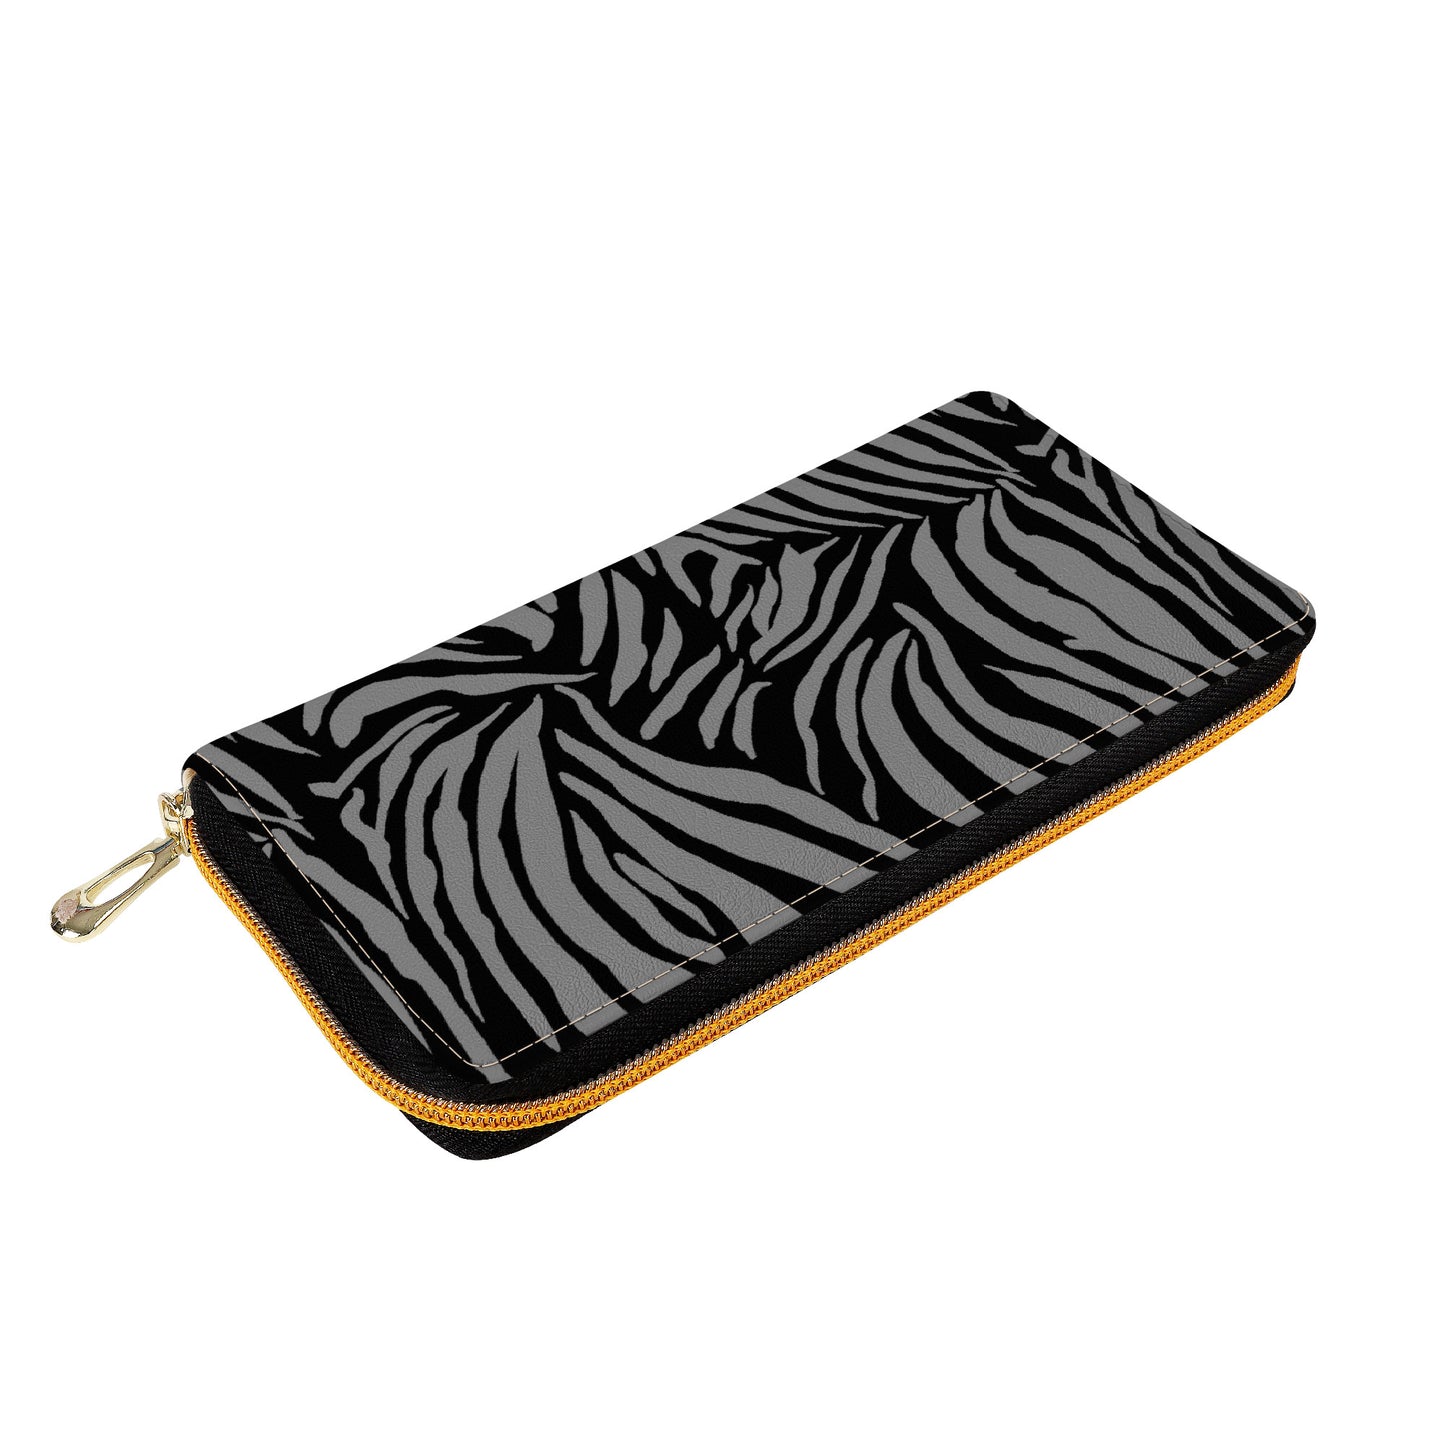 "Mono Zebra" Zipper Purse Clutch Bag